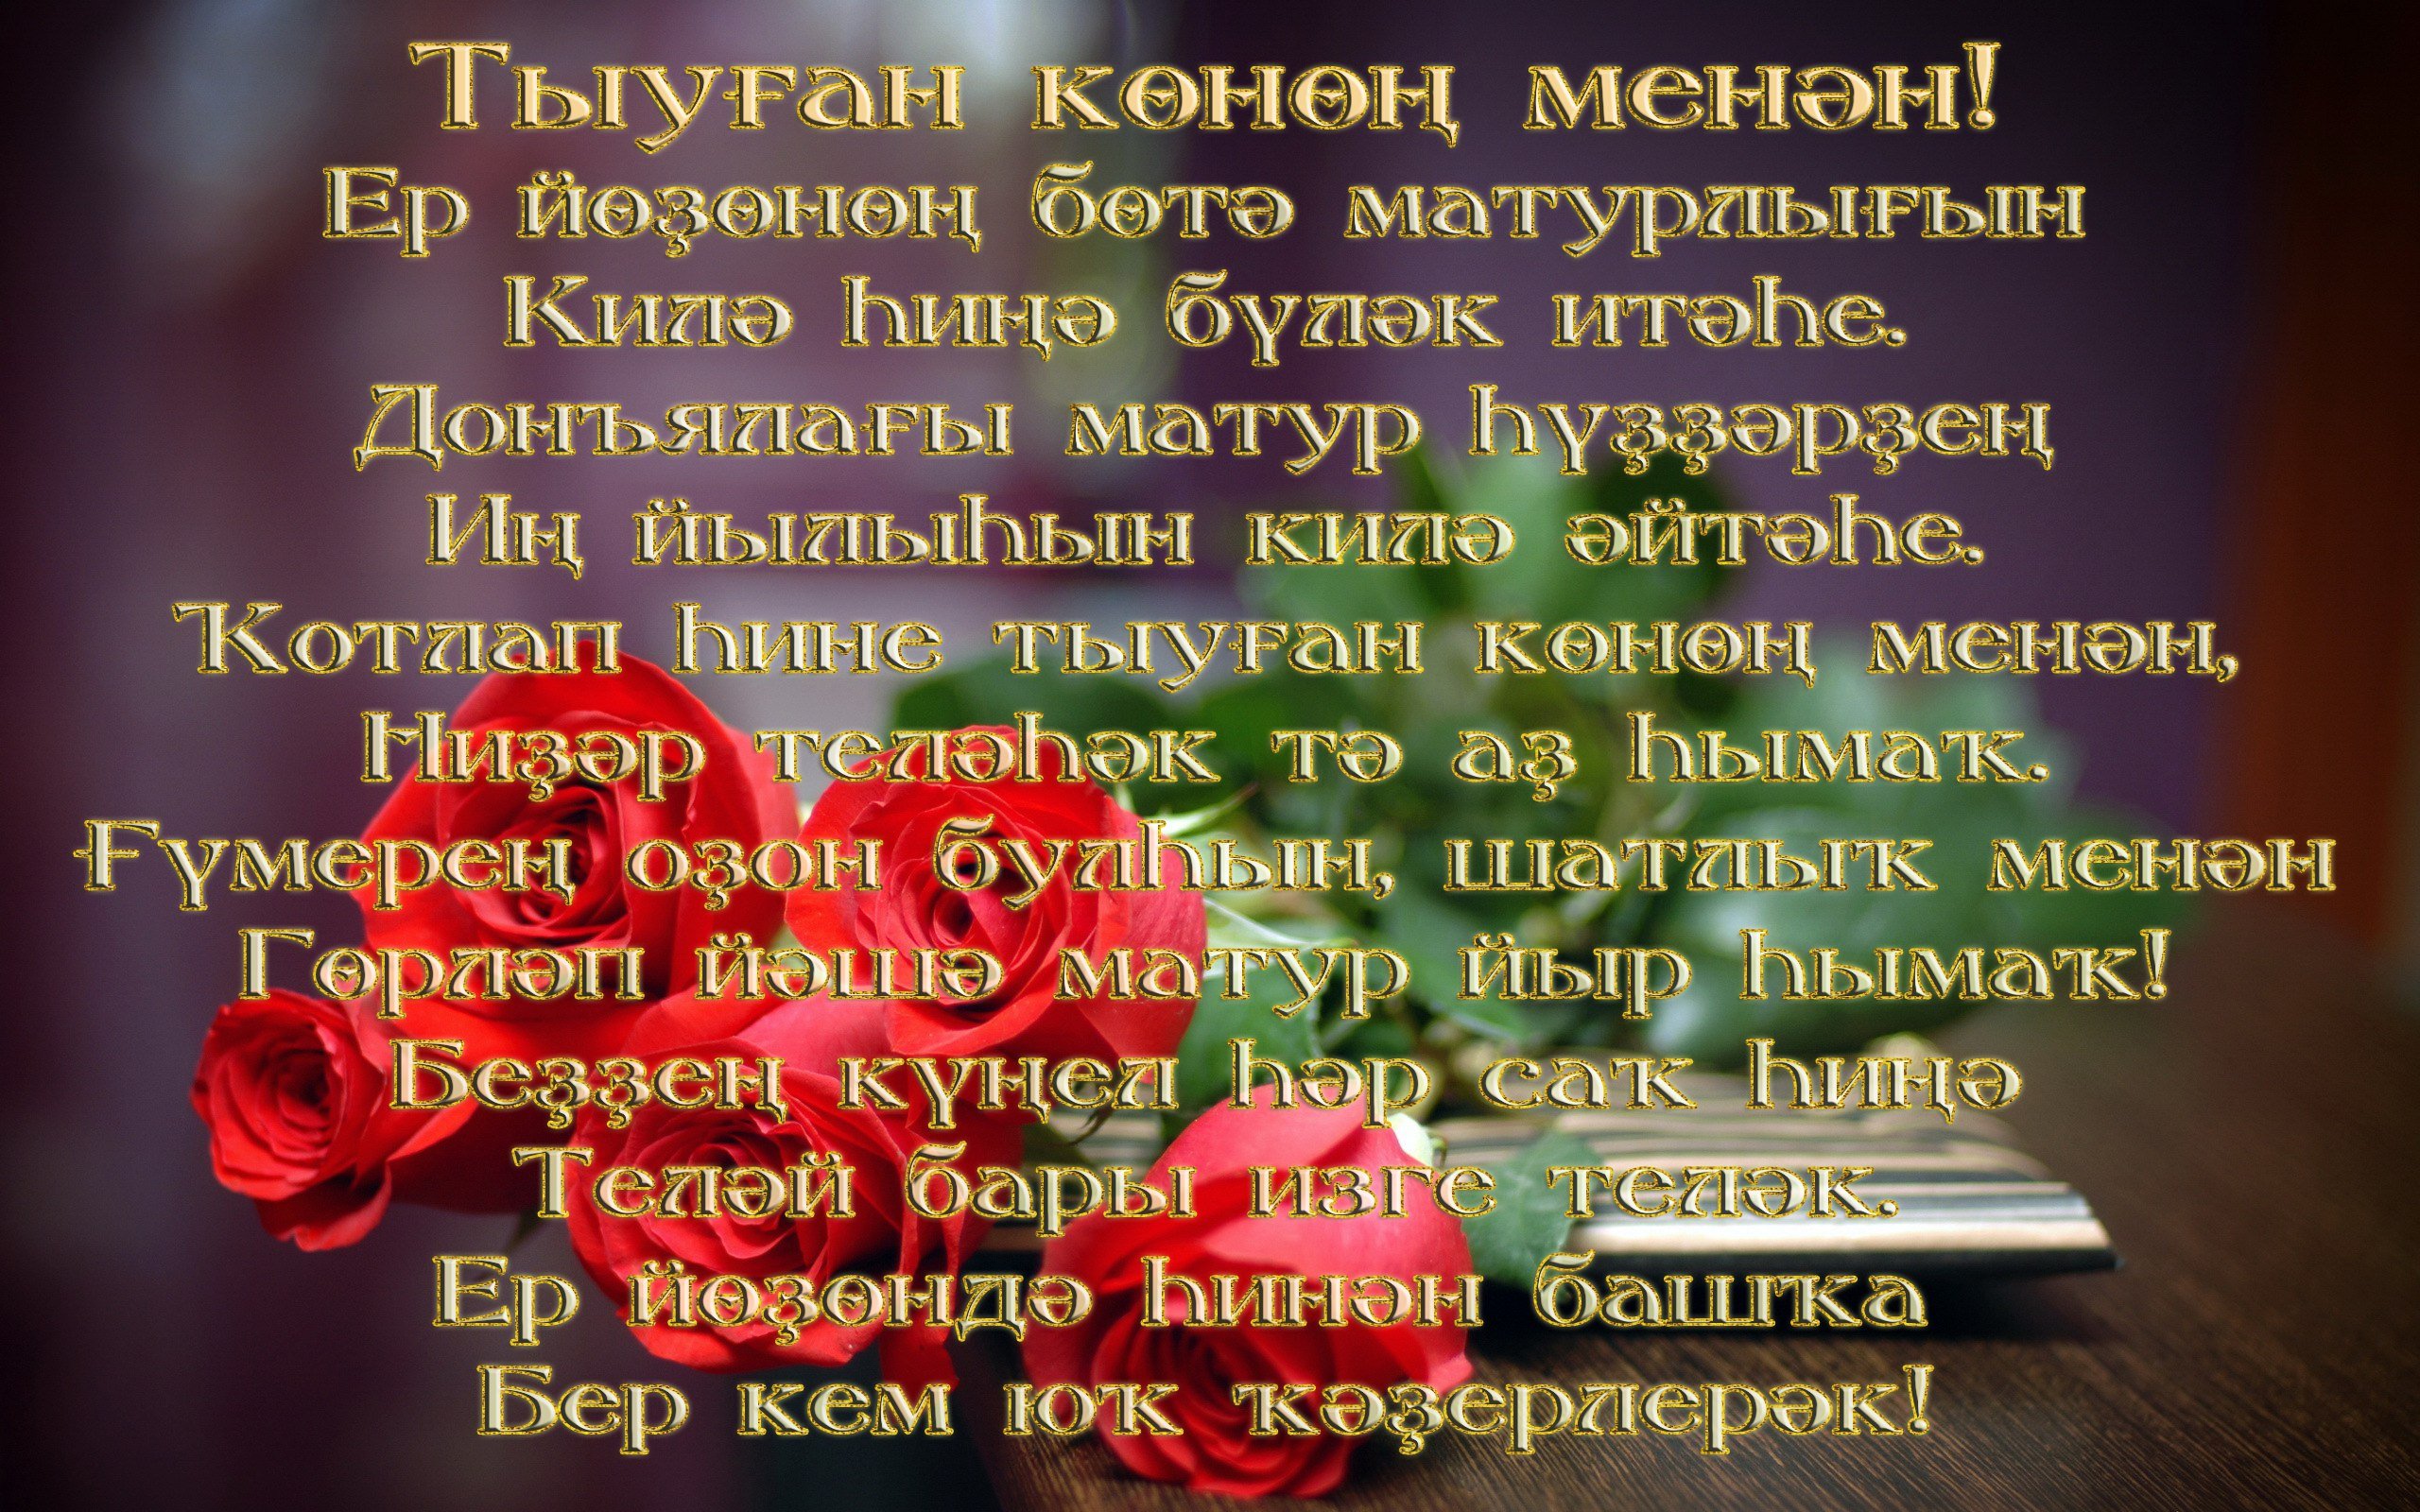 Татарские поздравление с днем рождения сына. Поздравления на башкирском. Поздравления с днём рождения на башкирском языке. Поздравления башкирском языке женщине. Поздравление с юбилеем на башкирском.